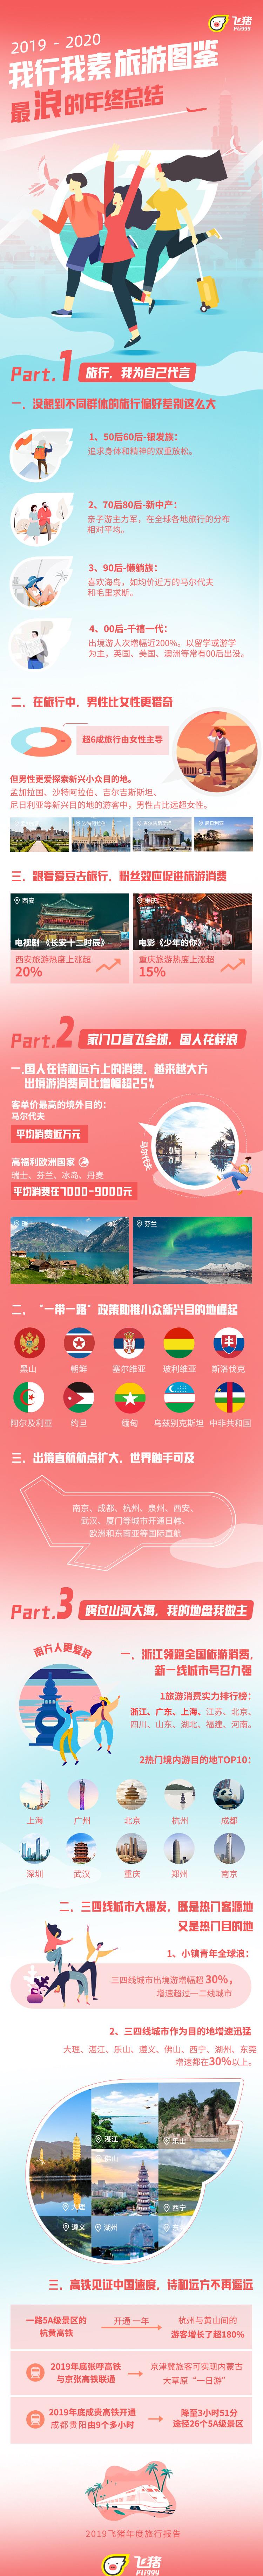 河南旅游排行榜_河南旅游消费全国前十,郑州上榜最受欢迎旅游目的地